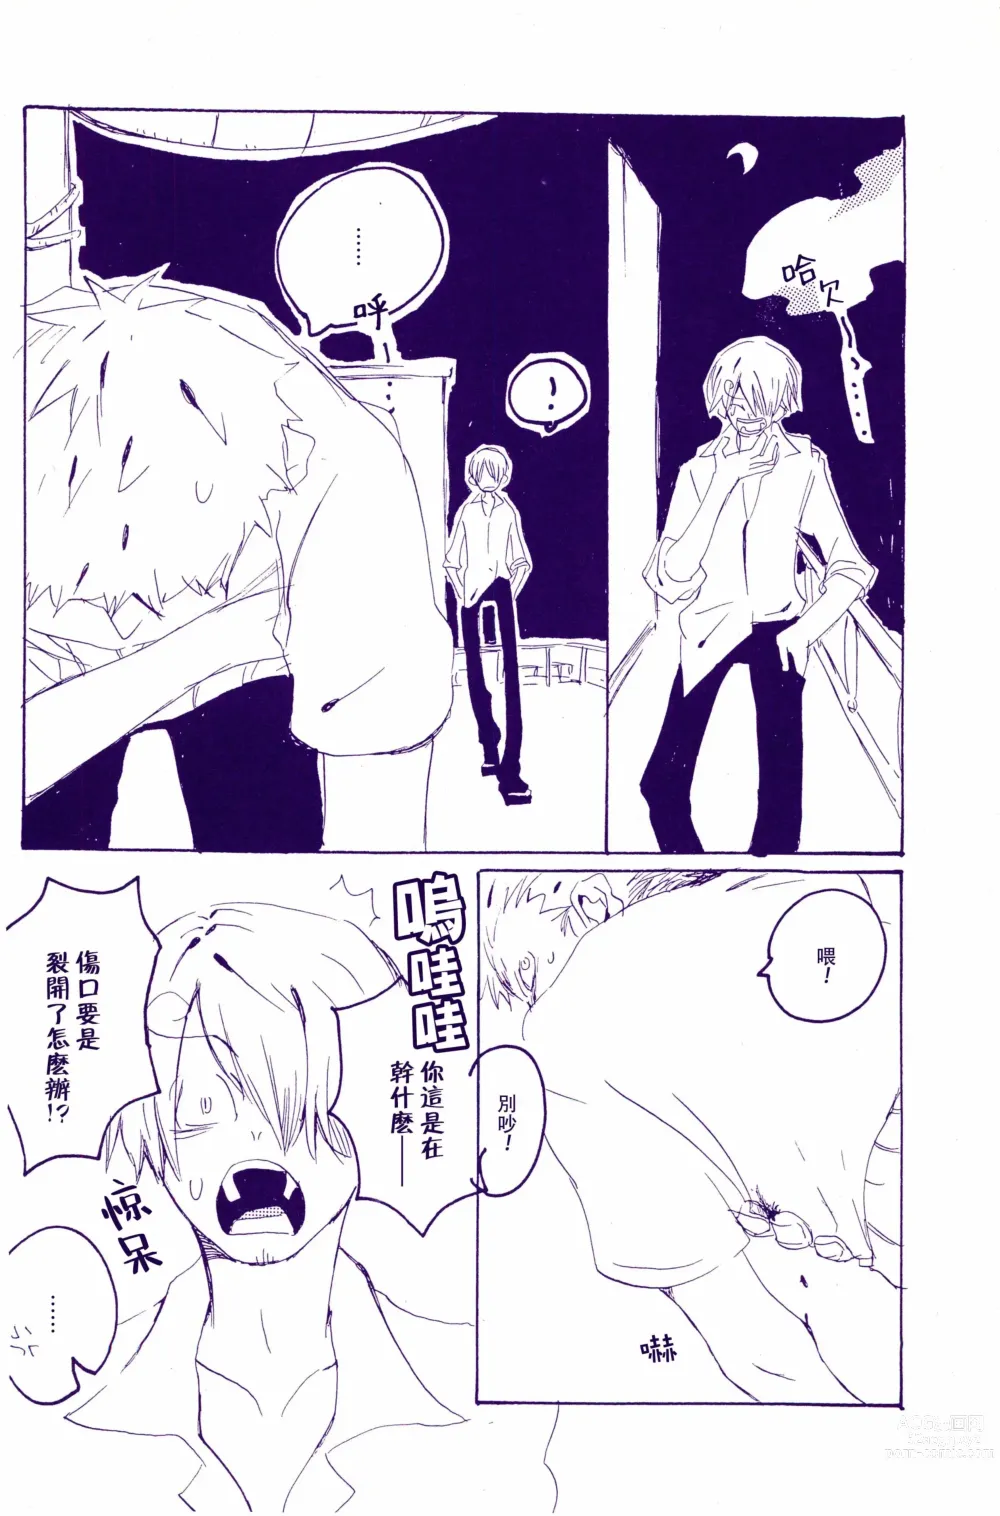 Page 27 of doujinshi 在暴风雨的夜晚 1